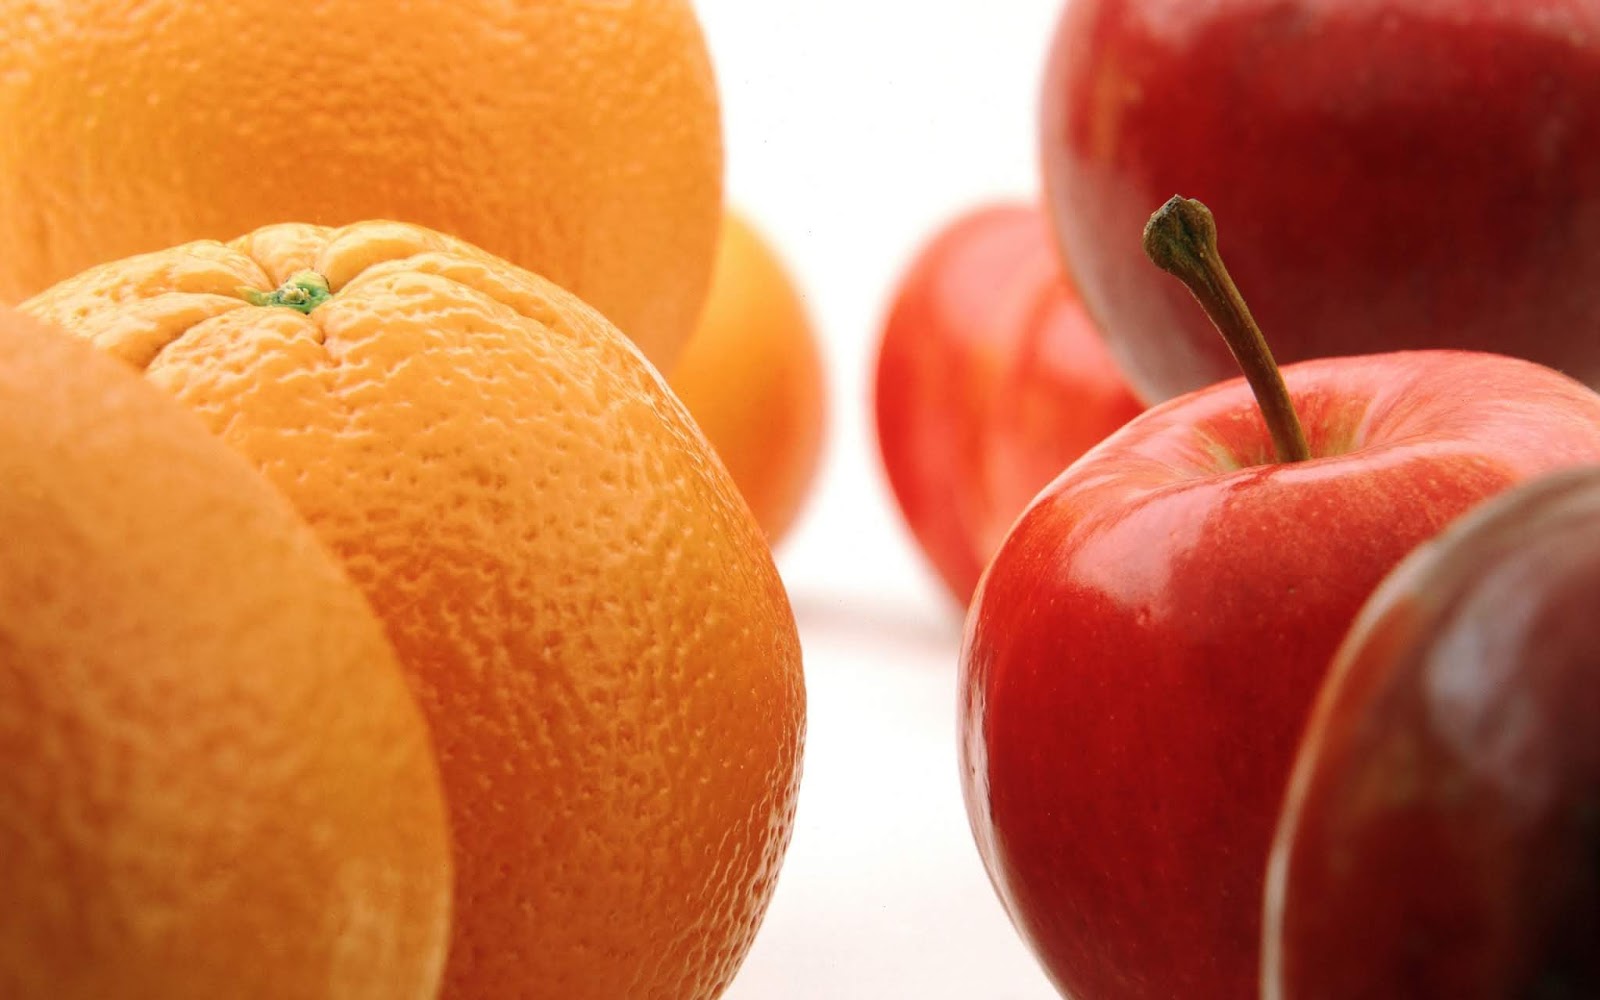 التفاح والبرتقال في المنام